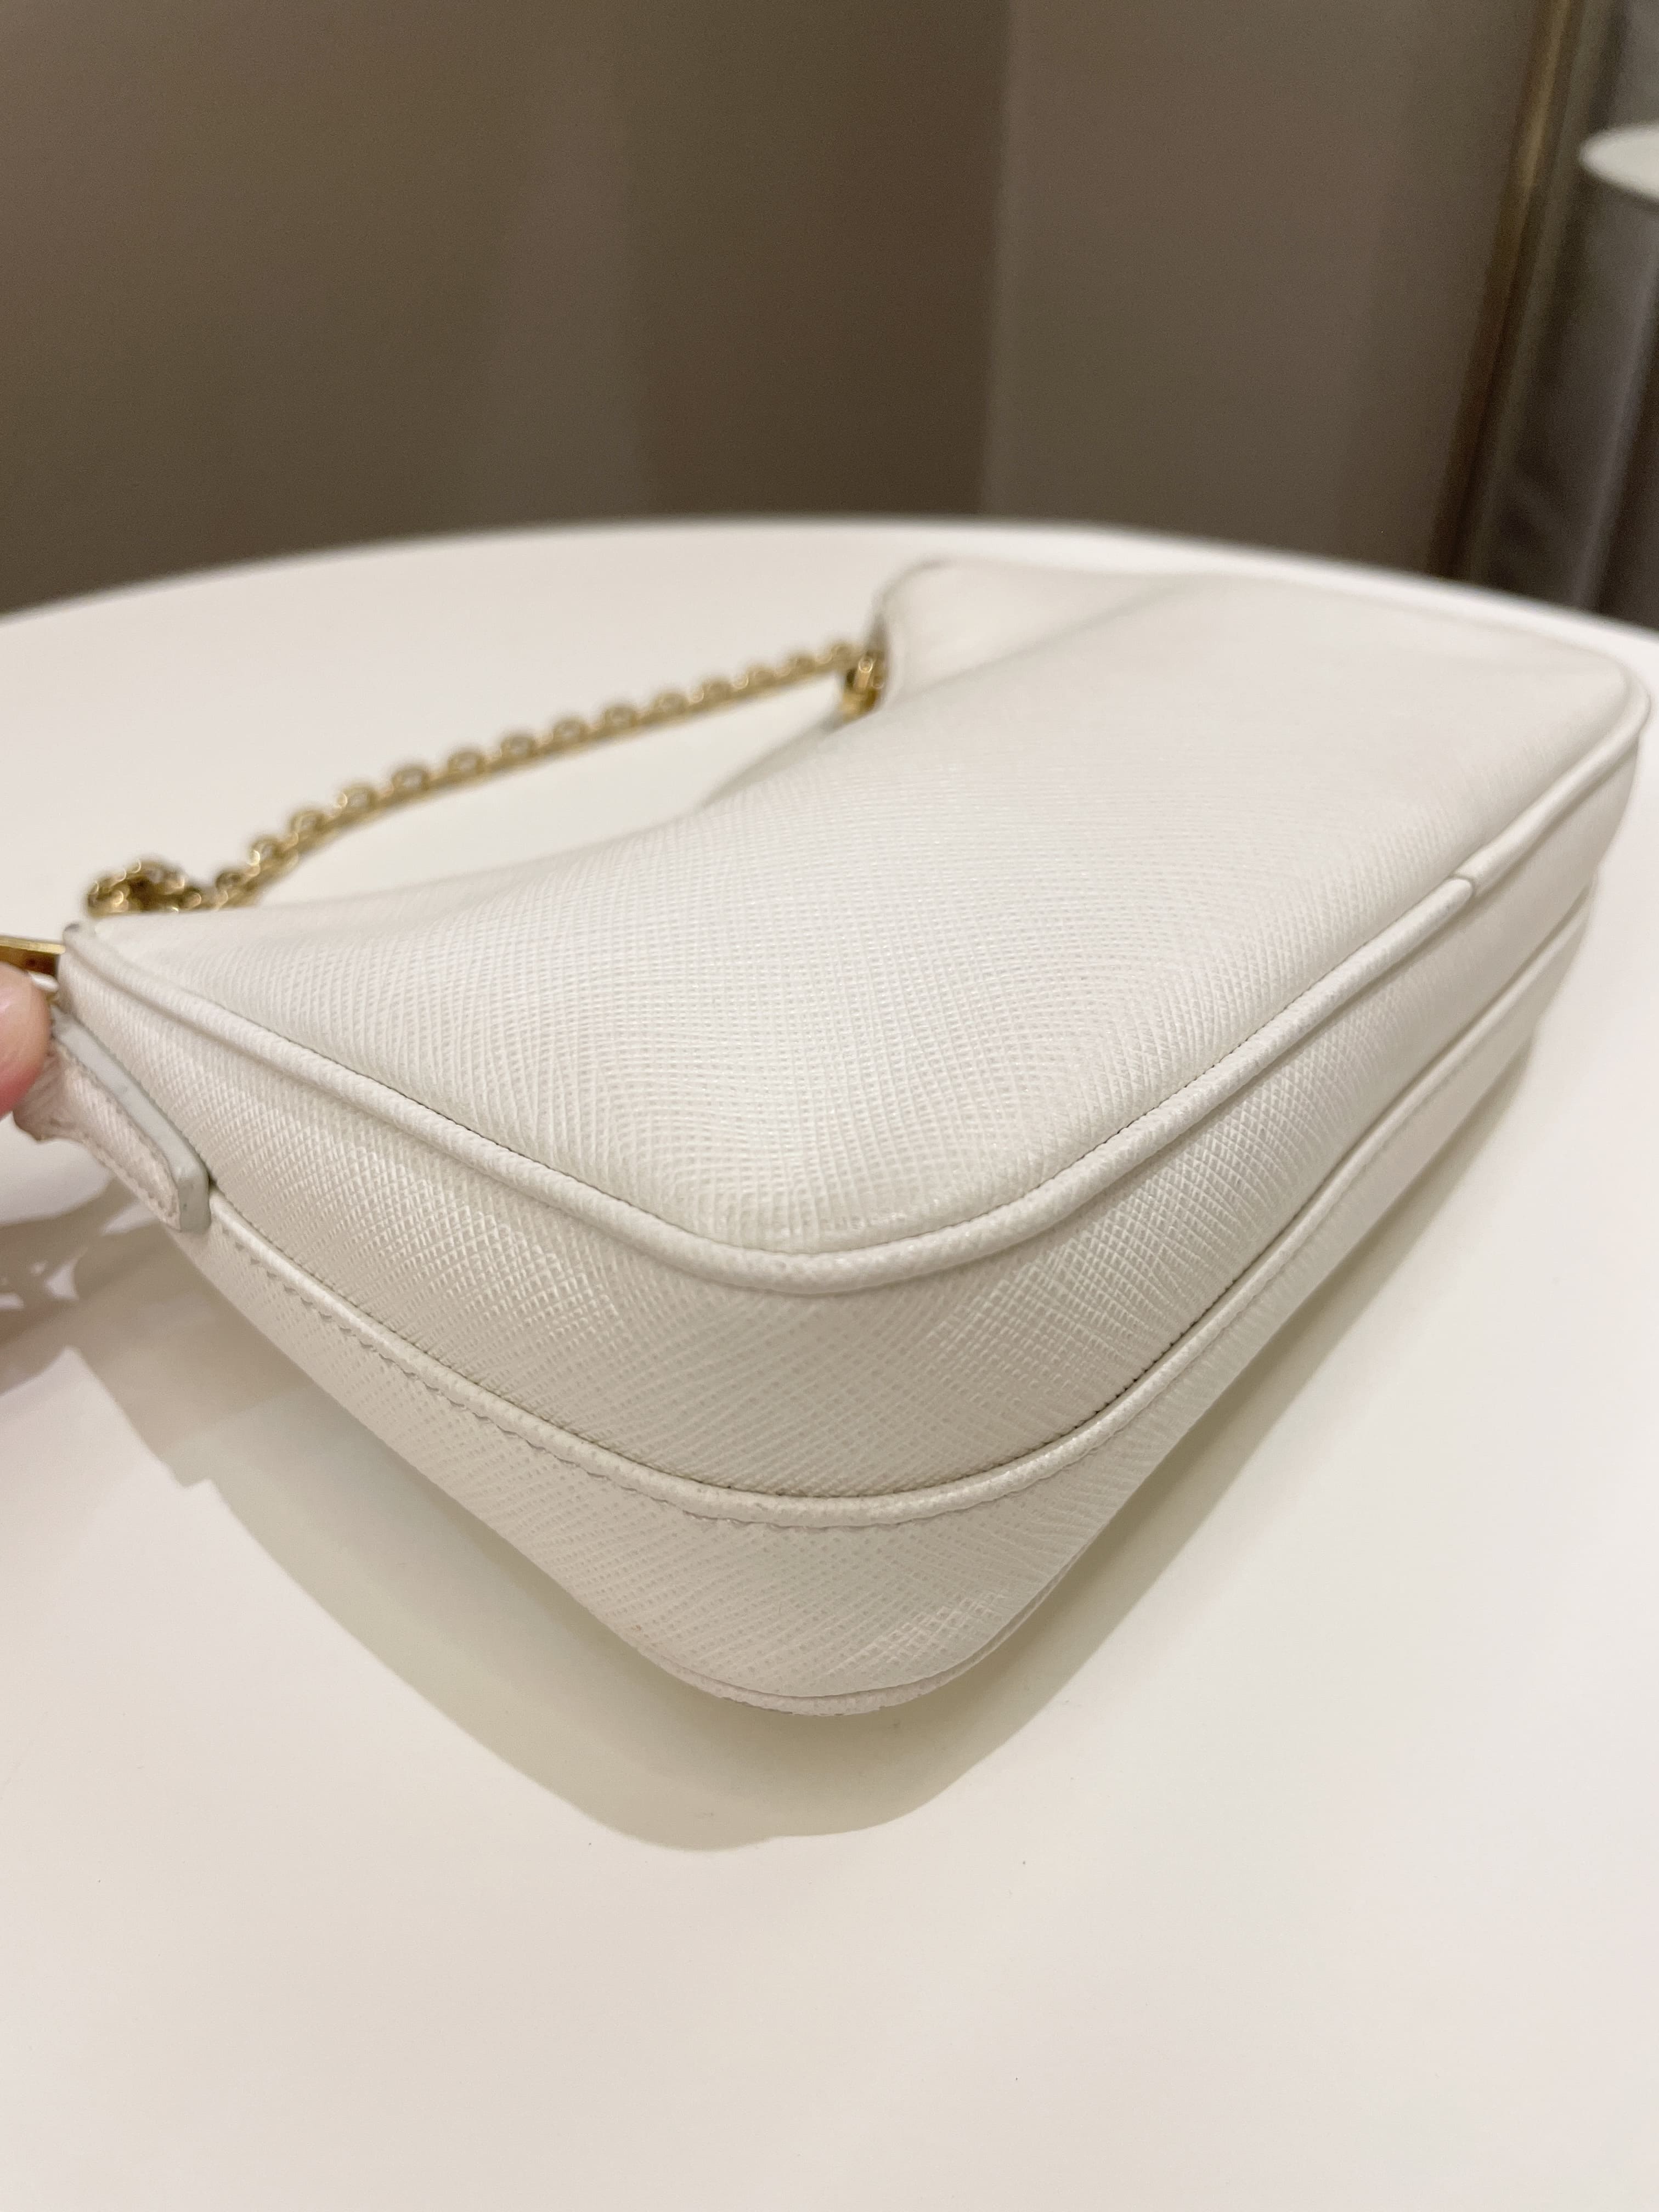 Prada Re-Edition 2005 Shoulder Bag Saffiano Leather White